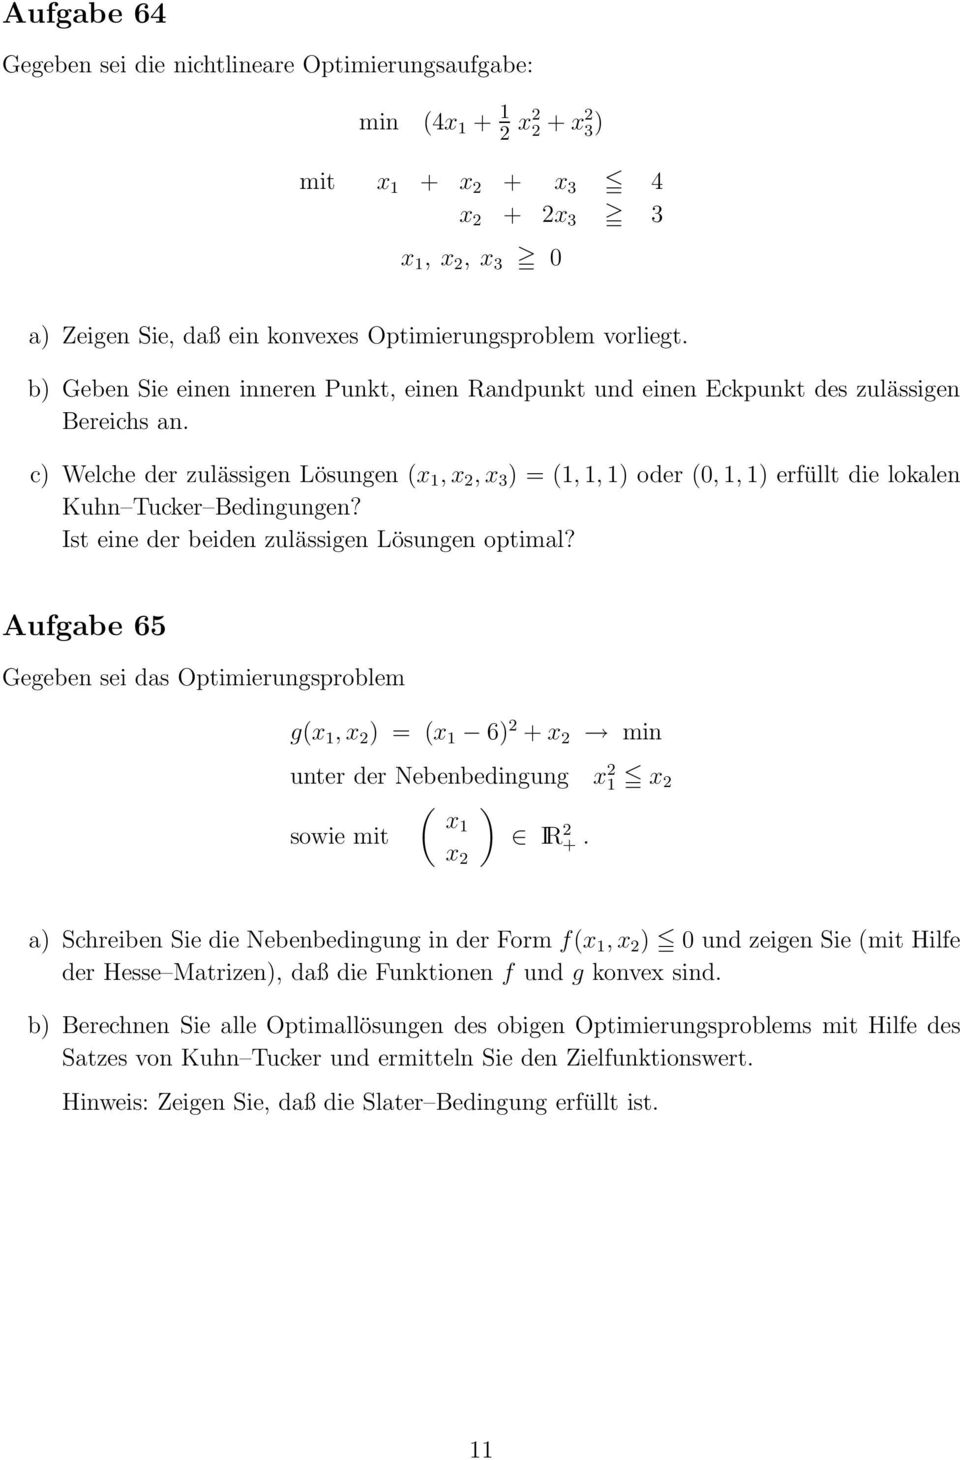 c) Welche der zulässigen Lösungen (x 1, x 2, x 3 ) = (1, 1, 1) oder (0, 1, 1) erfüllt die lokalen Kuhn Tucker Bedingungen? Ist eine der beiden zulässigen Lösungen optimal?